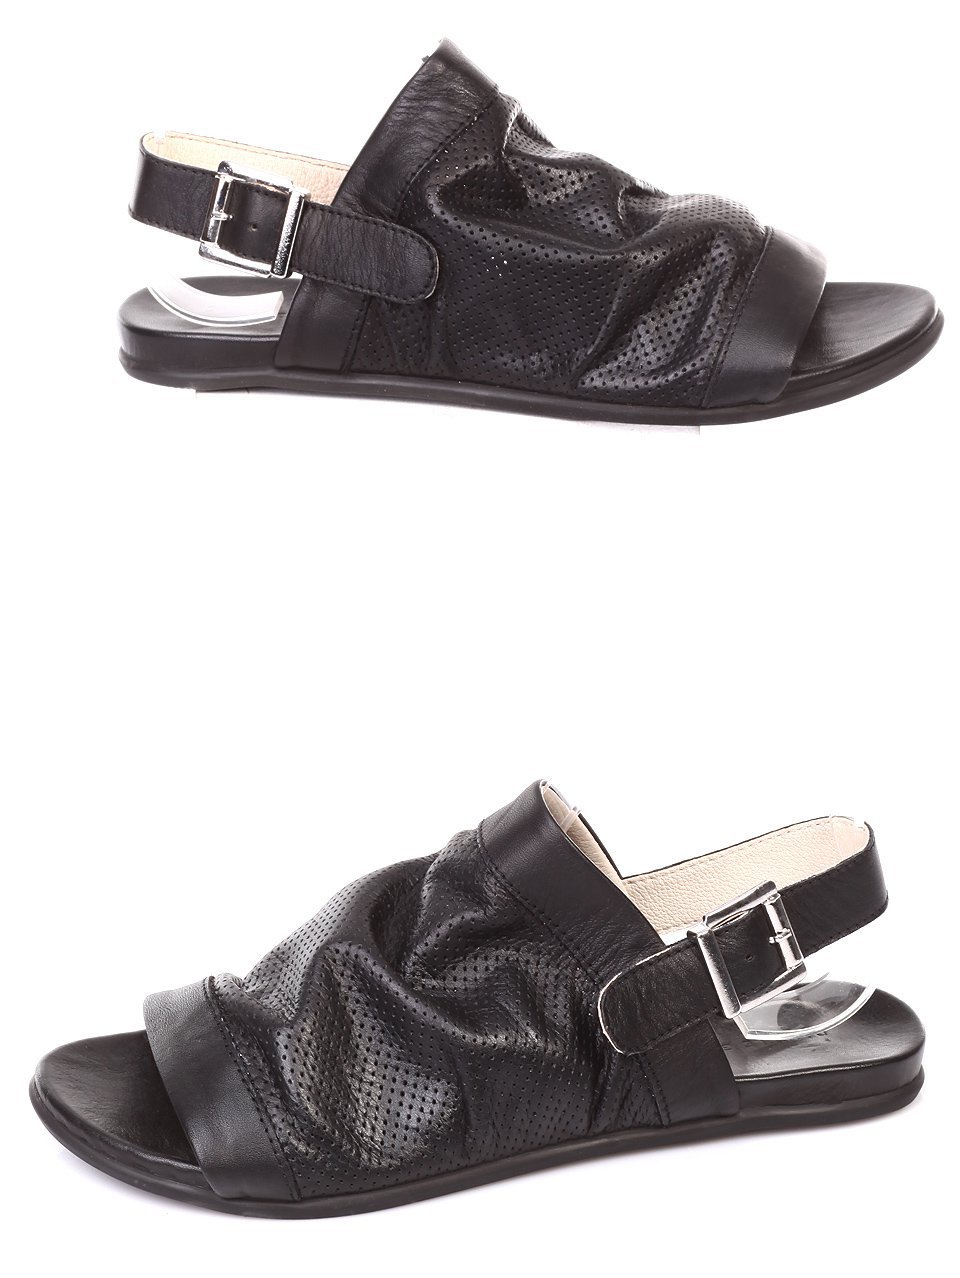 Ежедневни дамски сандали от естествена кожа 4AB-18503 black